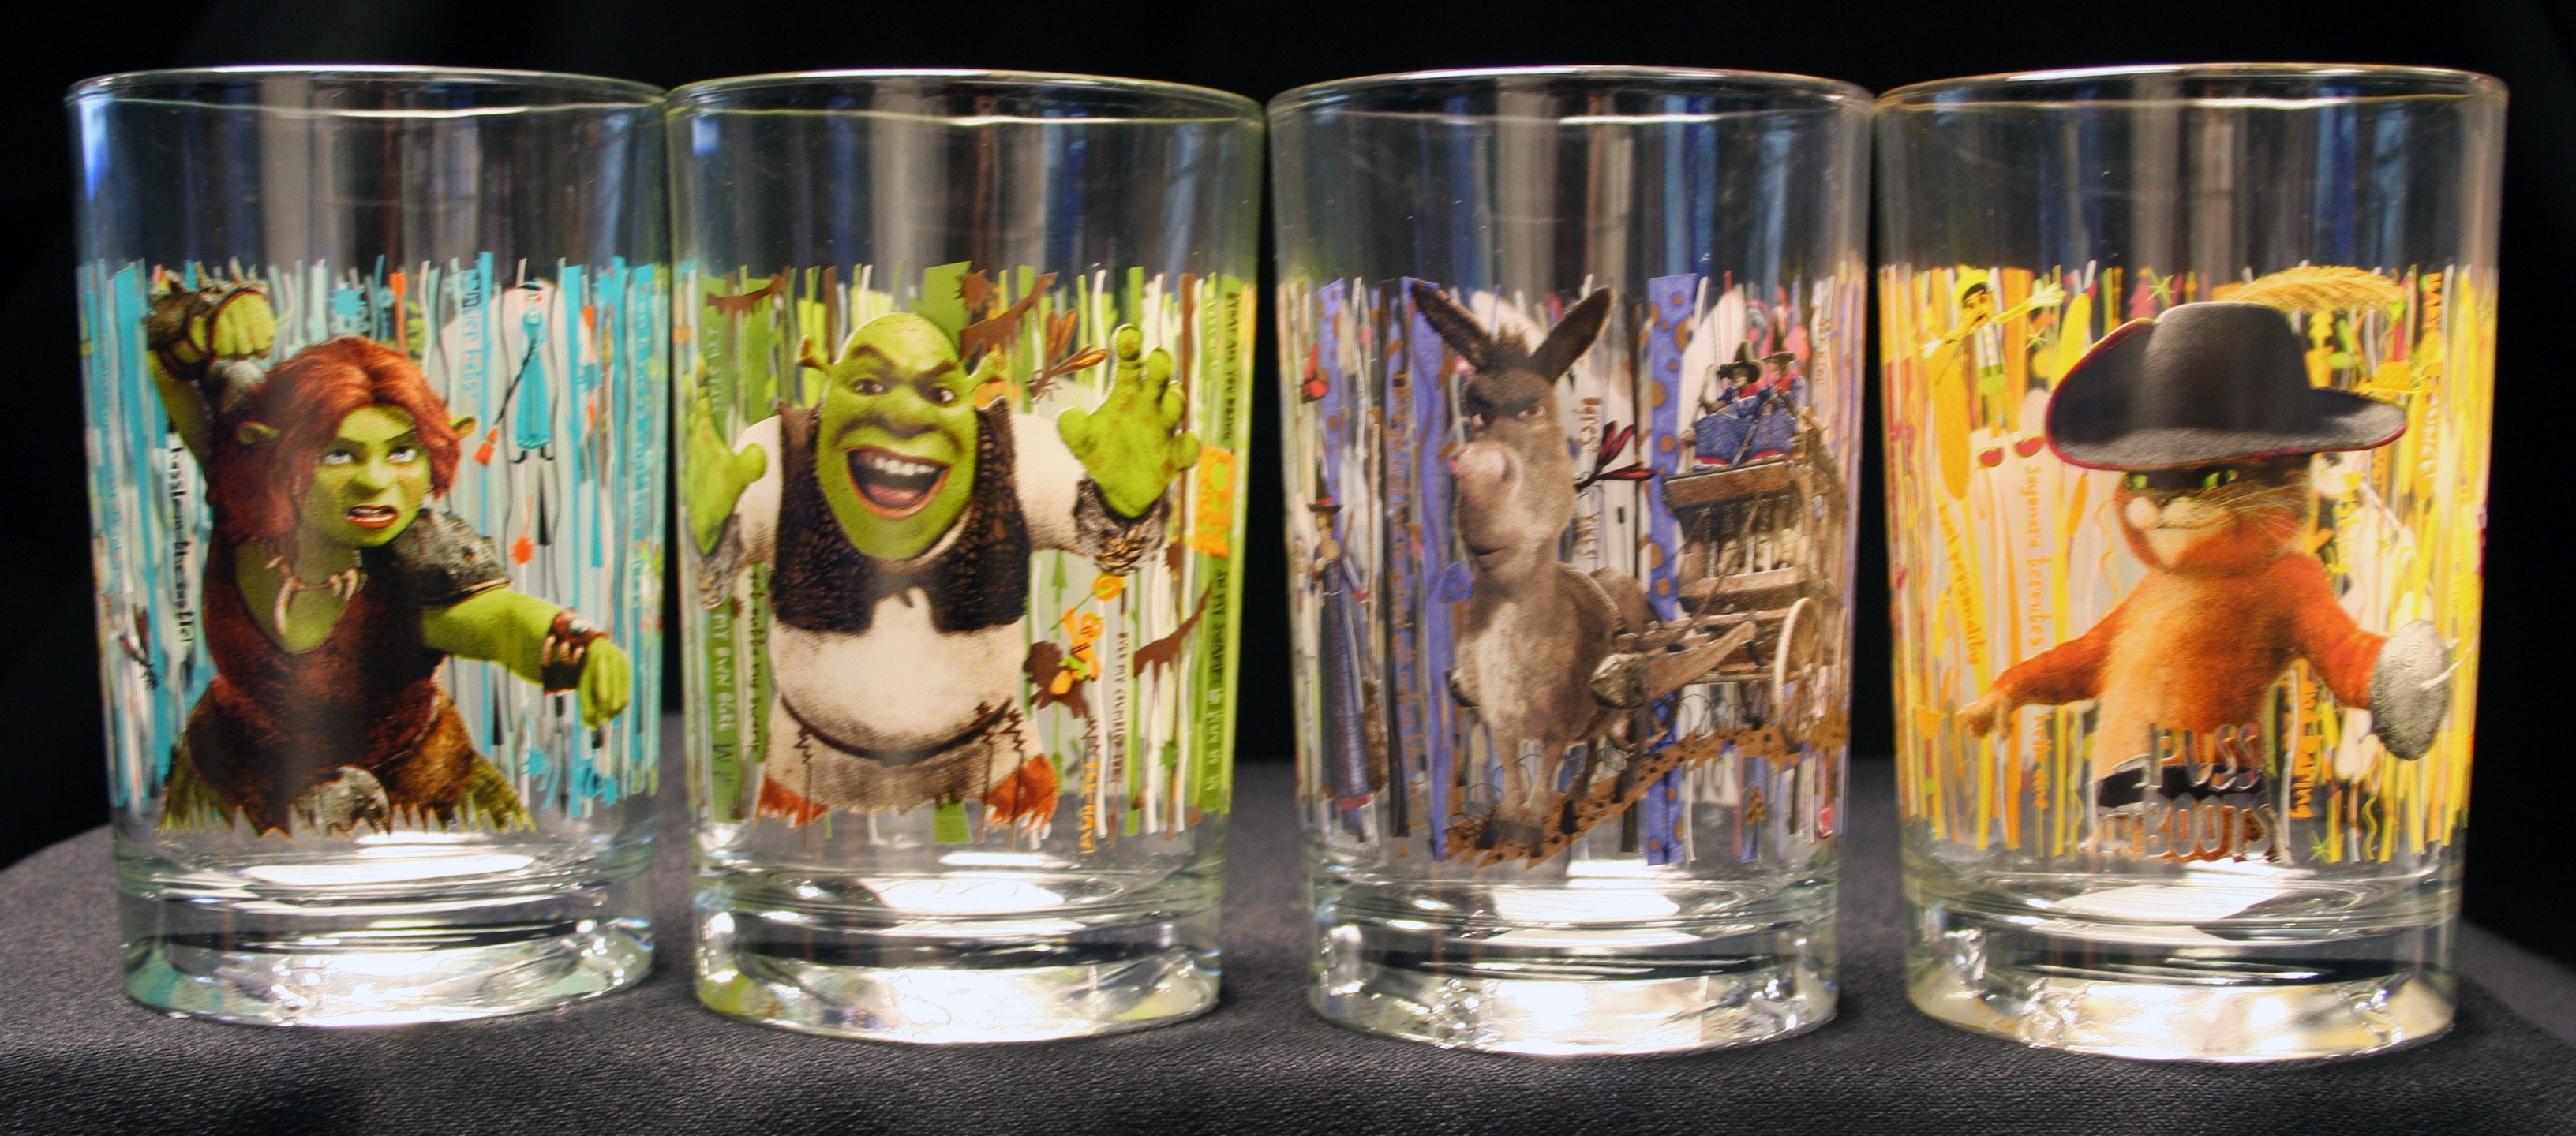 Shrek Forever After 3D” glasses